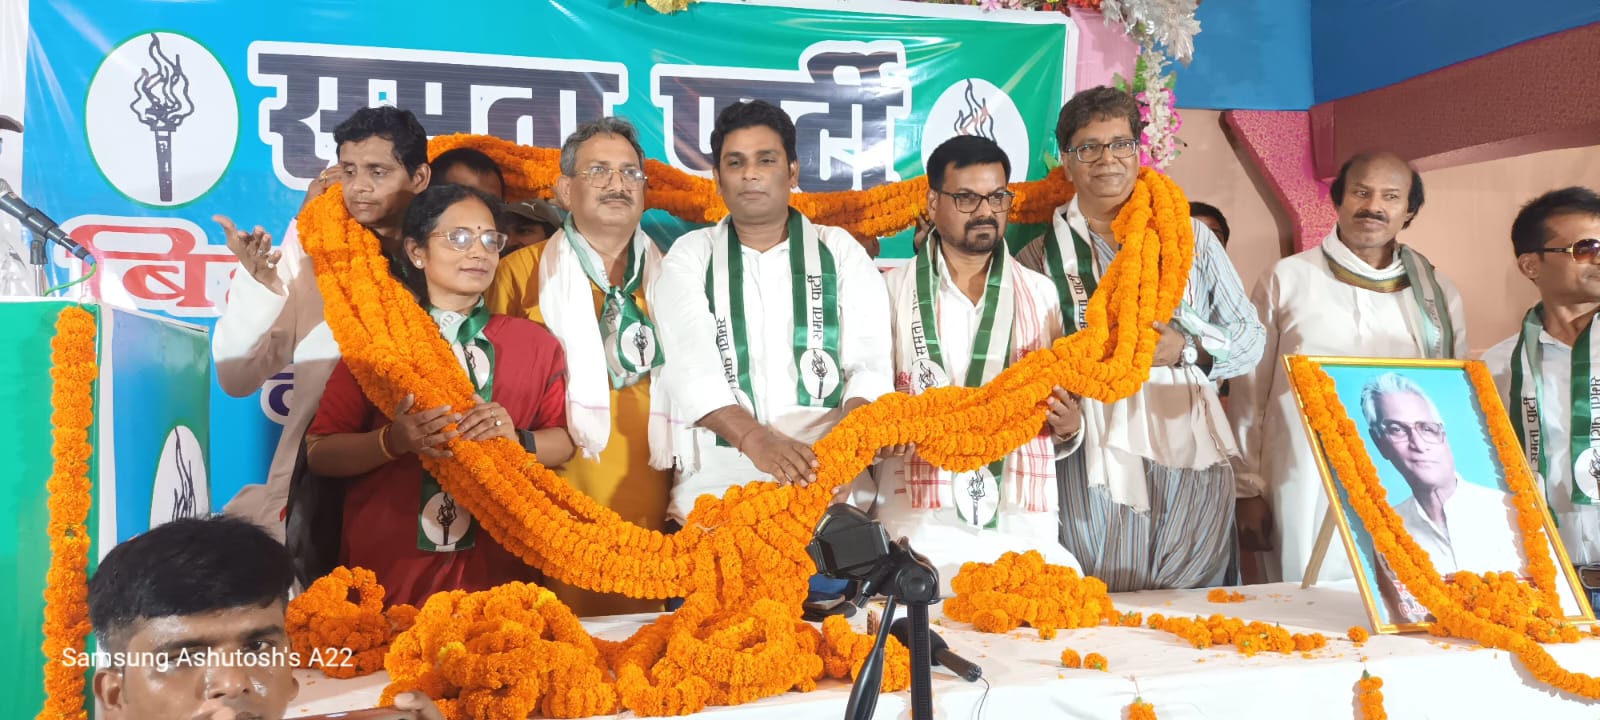 समता पार्टी ने जदयू नेताओं, कार्यकर्ताओं से किया घर वापसी का आह्वान